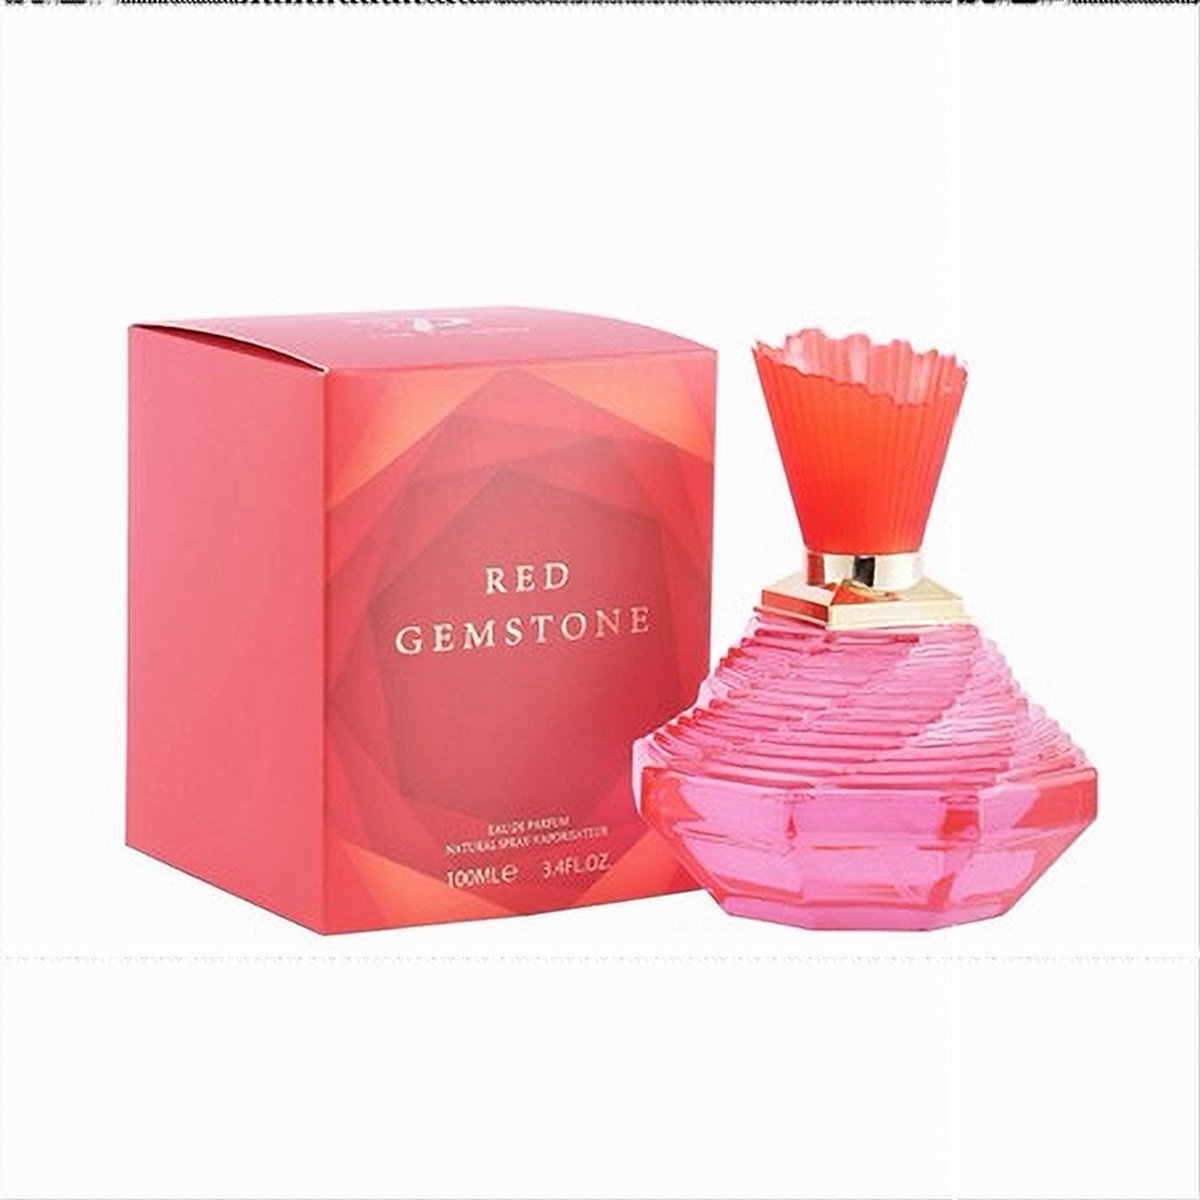 Red gemstone parfum